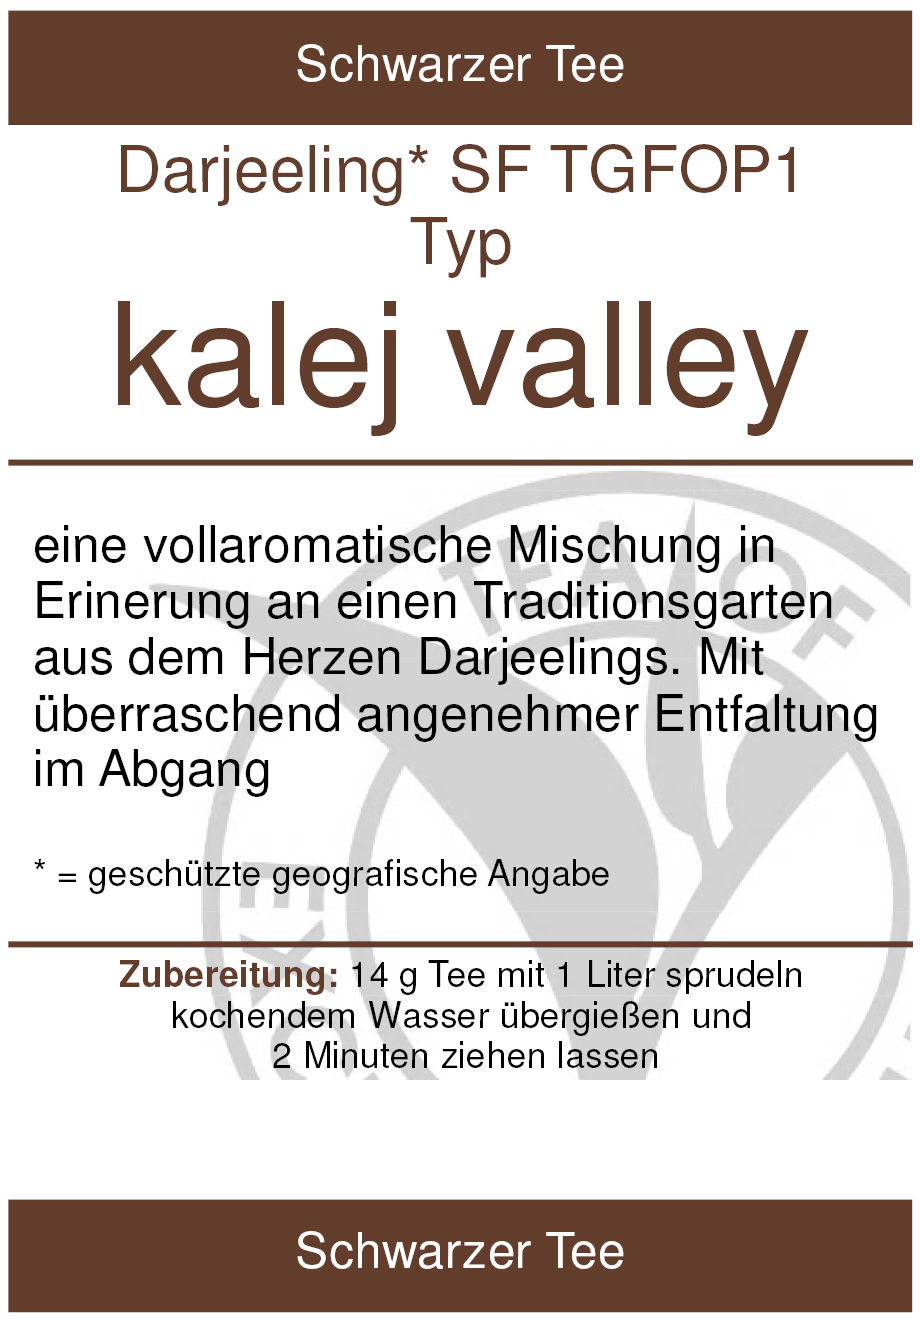 kalej valley